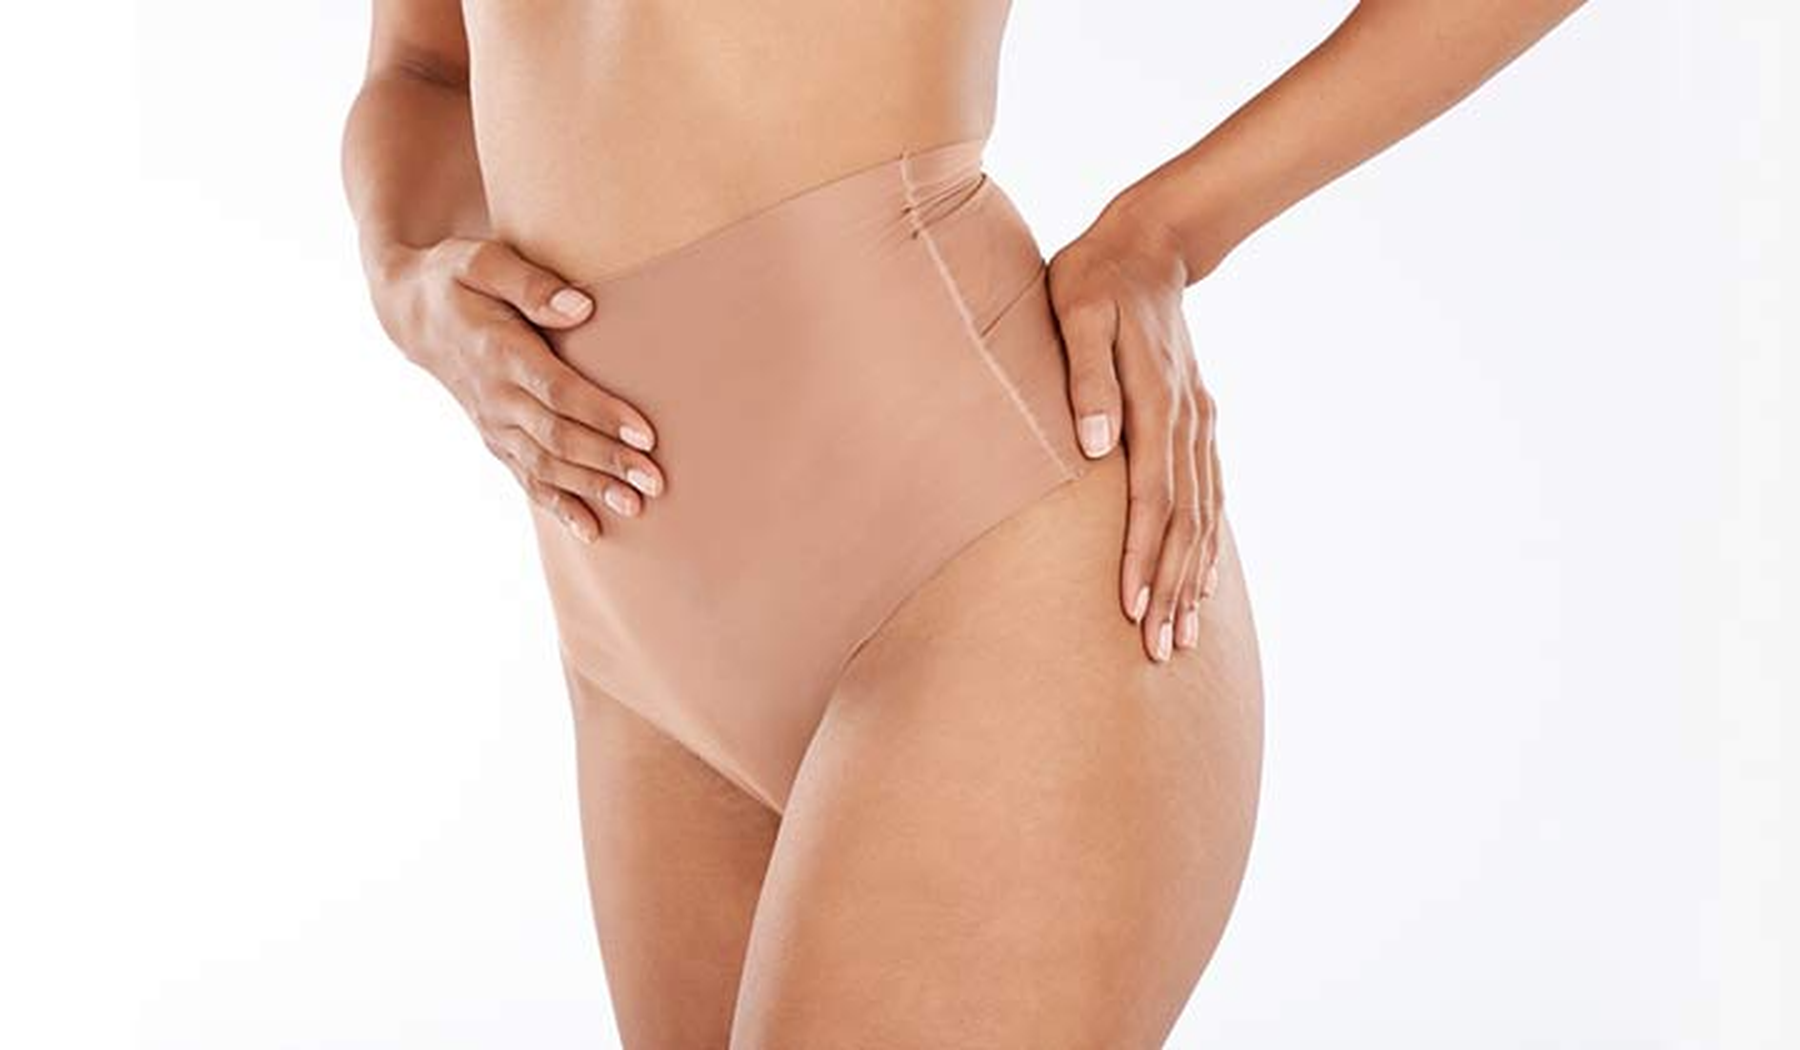 Woman wearing Spanx support underwear